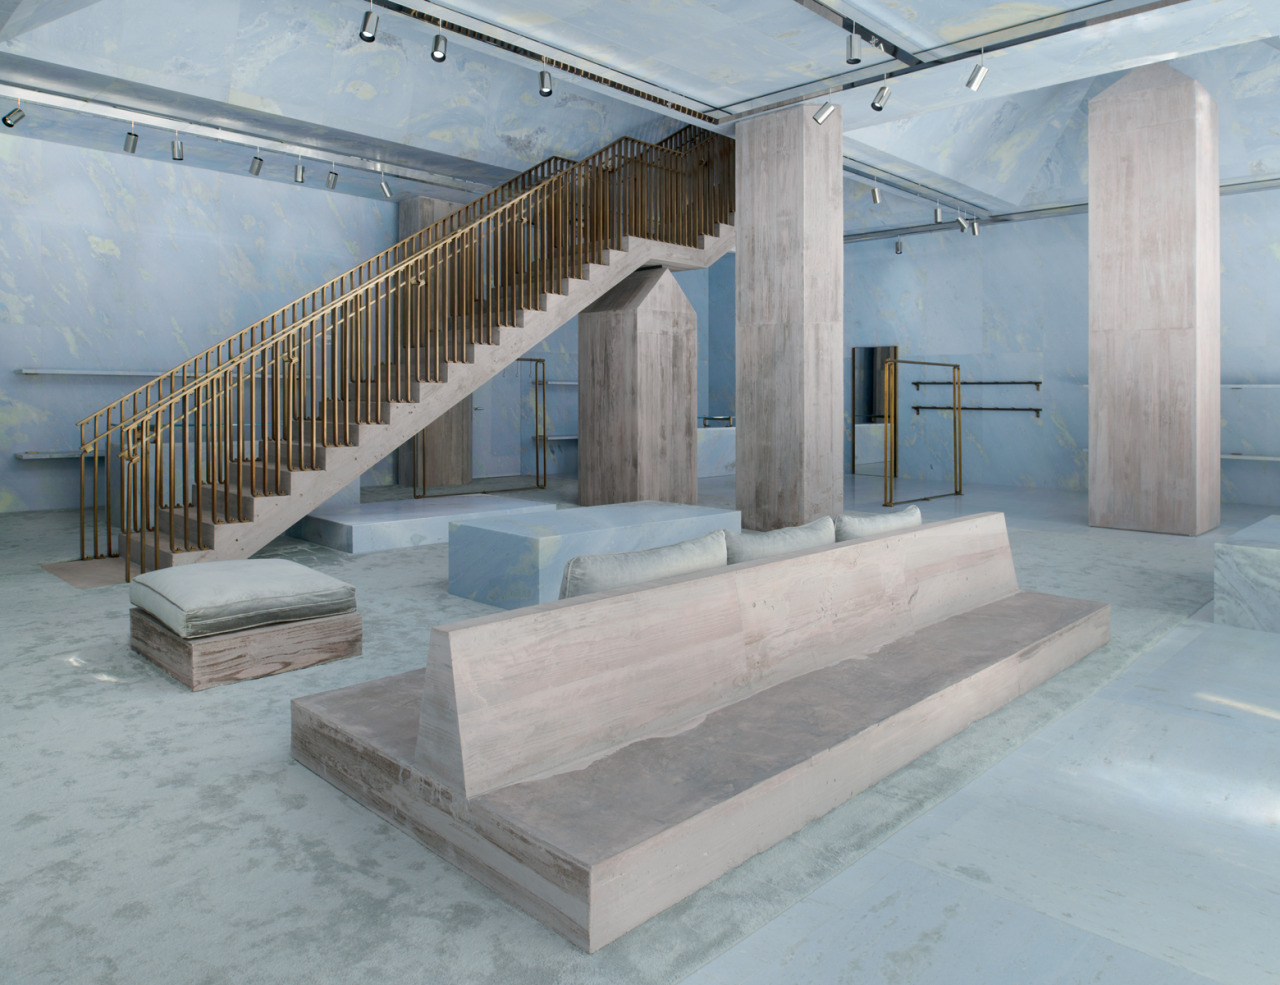 Valerio Olgiati uses sky blue marble for interiors of Céline store in Miami